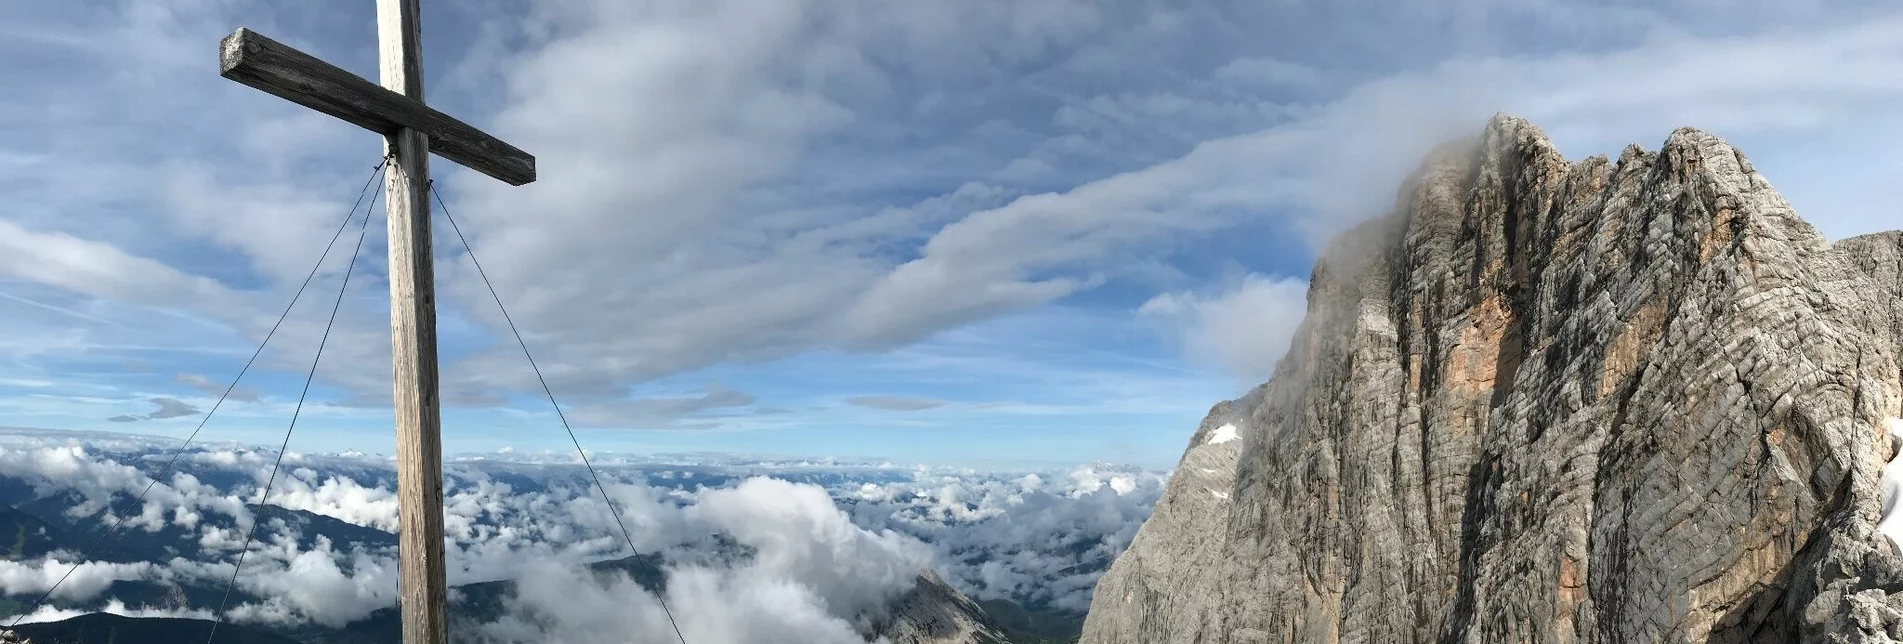 Klettersteig Johann Klettersteig - Touren-Impression #1 | © Erlebnisregion Schladming-Dachstein